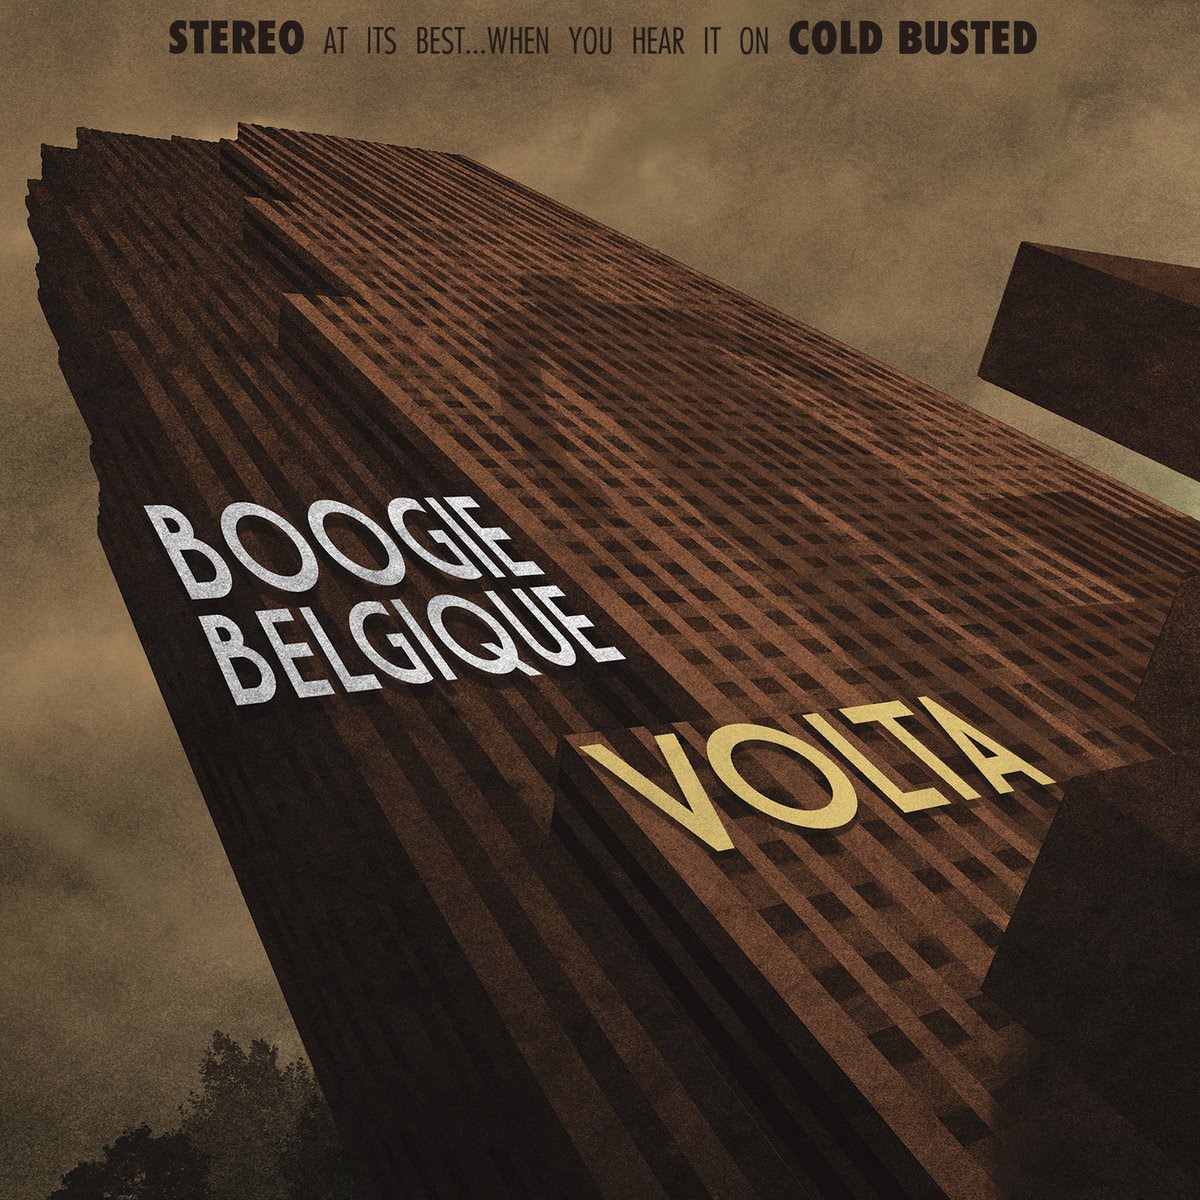 Boogie Belgique Volta